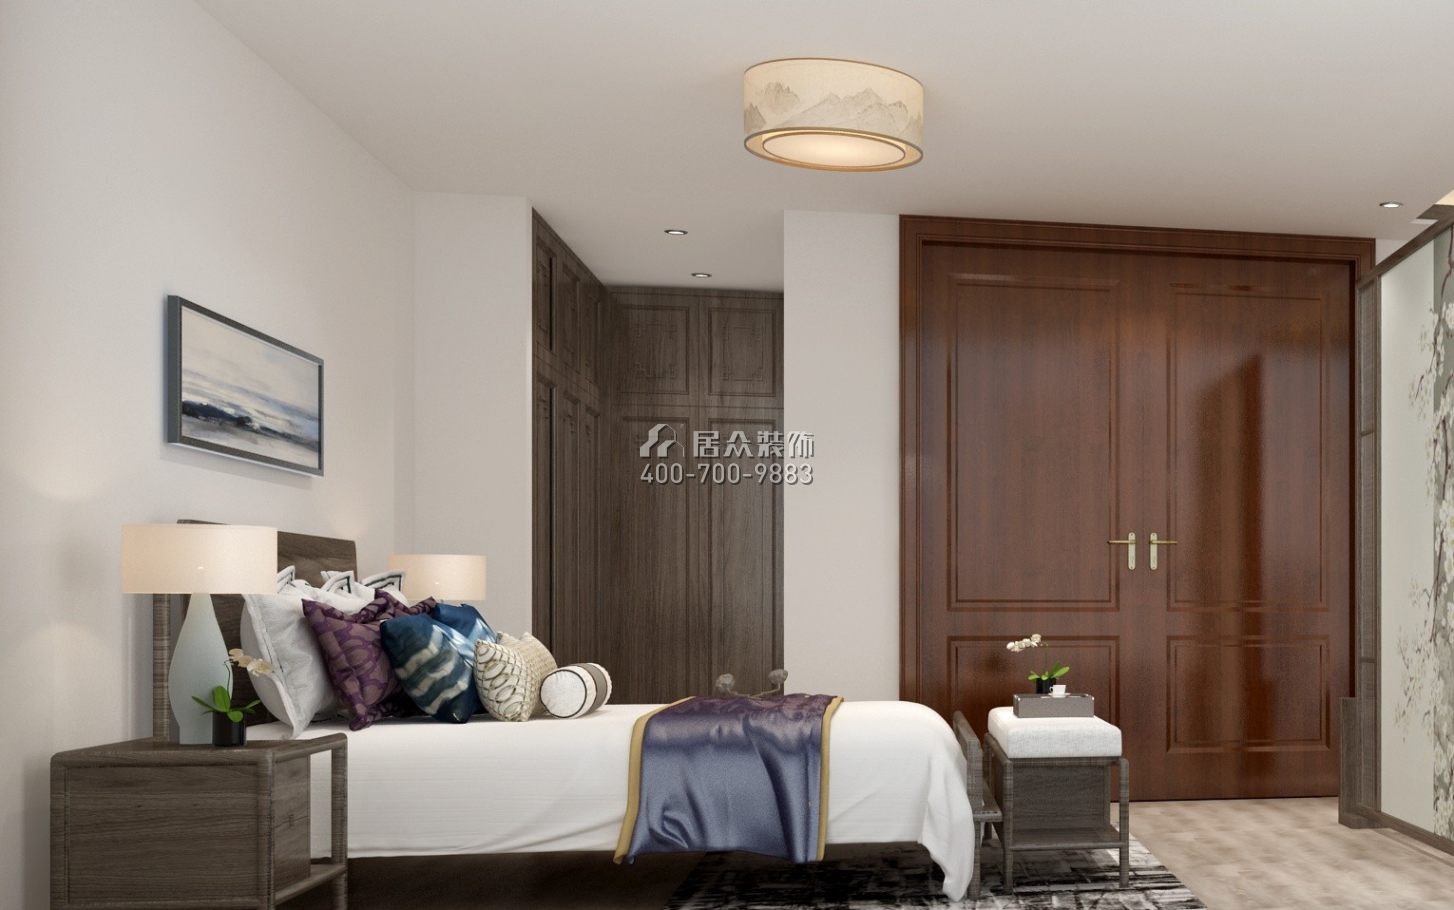 万科棠樾600平方米中式风格别墅户型卧室装修效果图